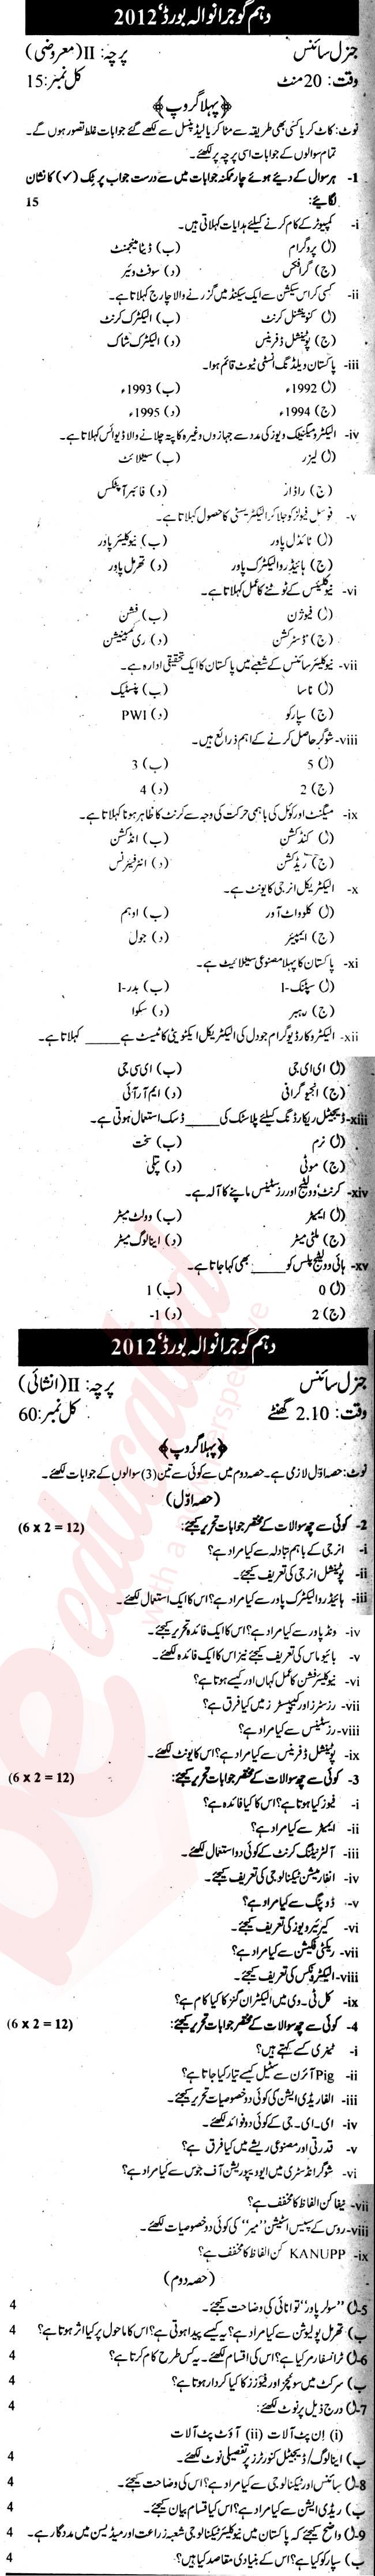 General Science 10th Urdu Medium Past Paper Group 1 BISE Gujranwala 2012